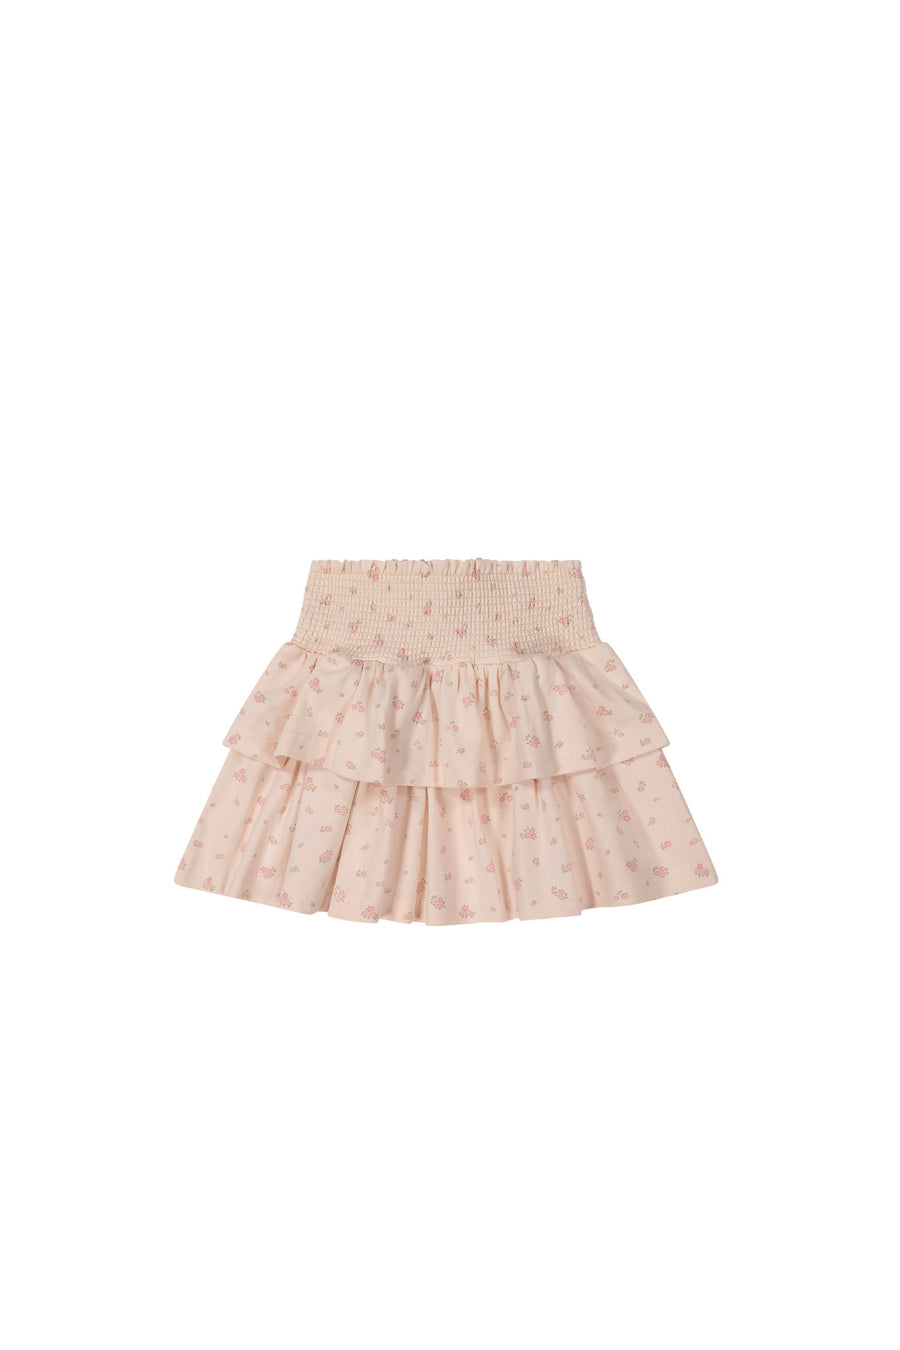 Organic Cotton Ruby Skirt - Irina Shell Childrens Skirt from Jamie Kay NZ